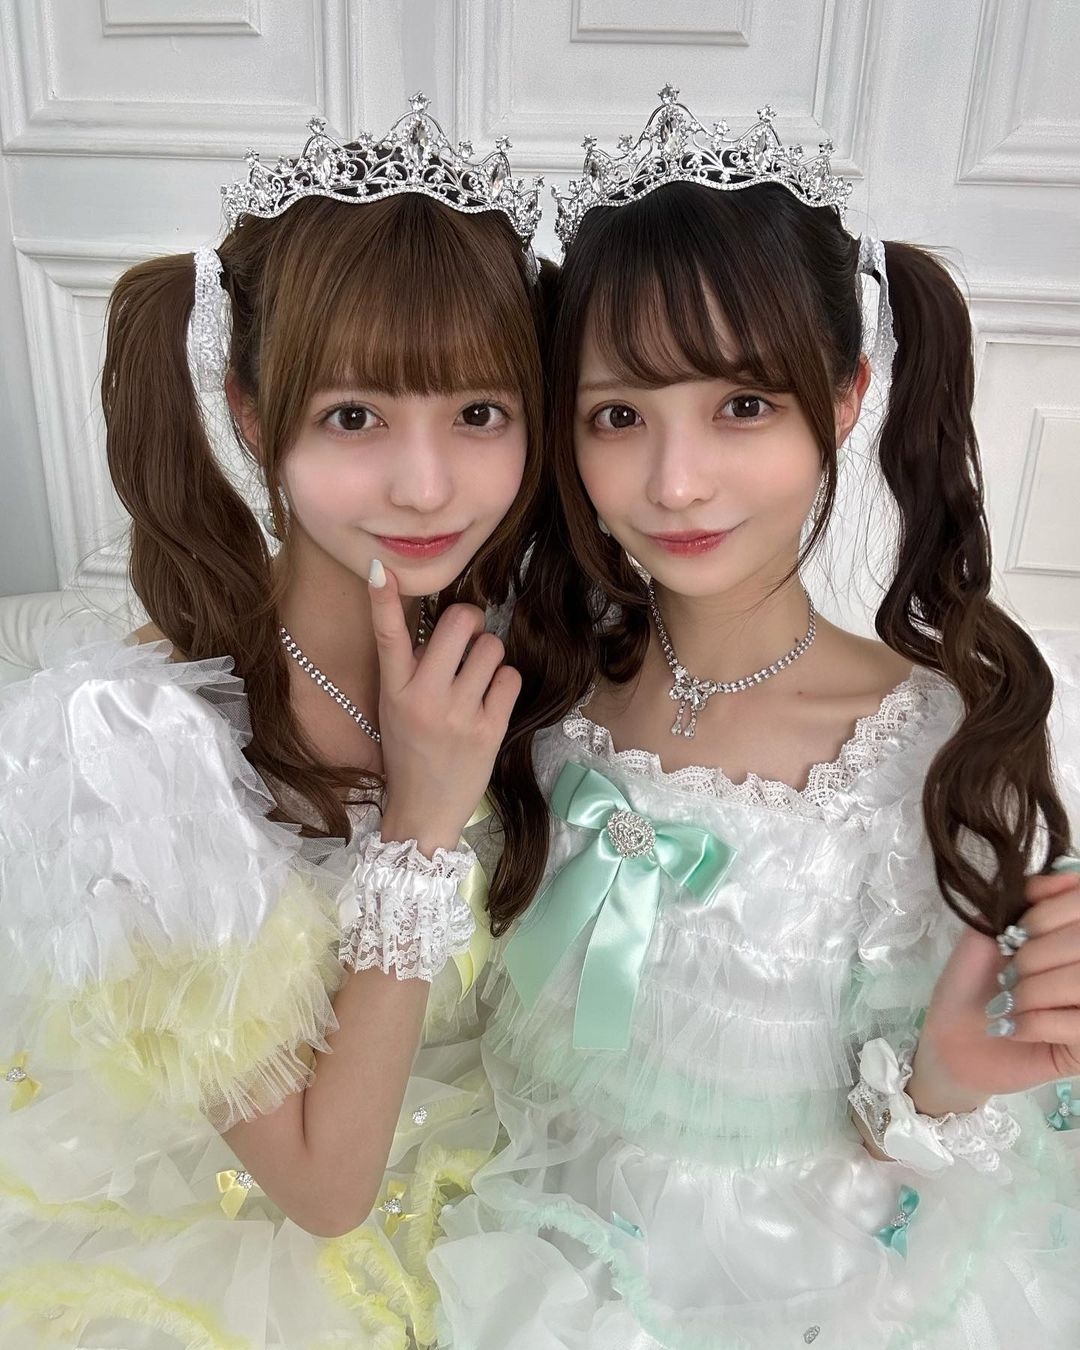 日本「奇蹟雙胞胎」美到被誤認為AI 兩人真實身份曝光 學霸出身獲網民關注